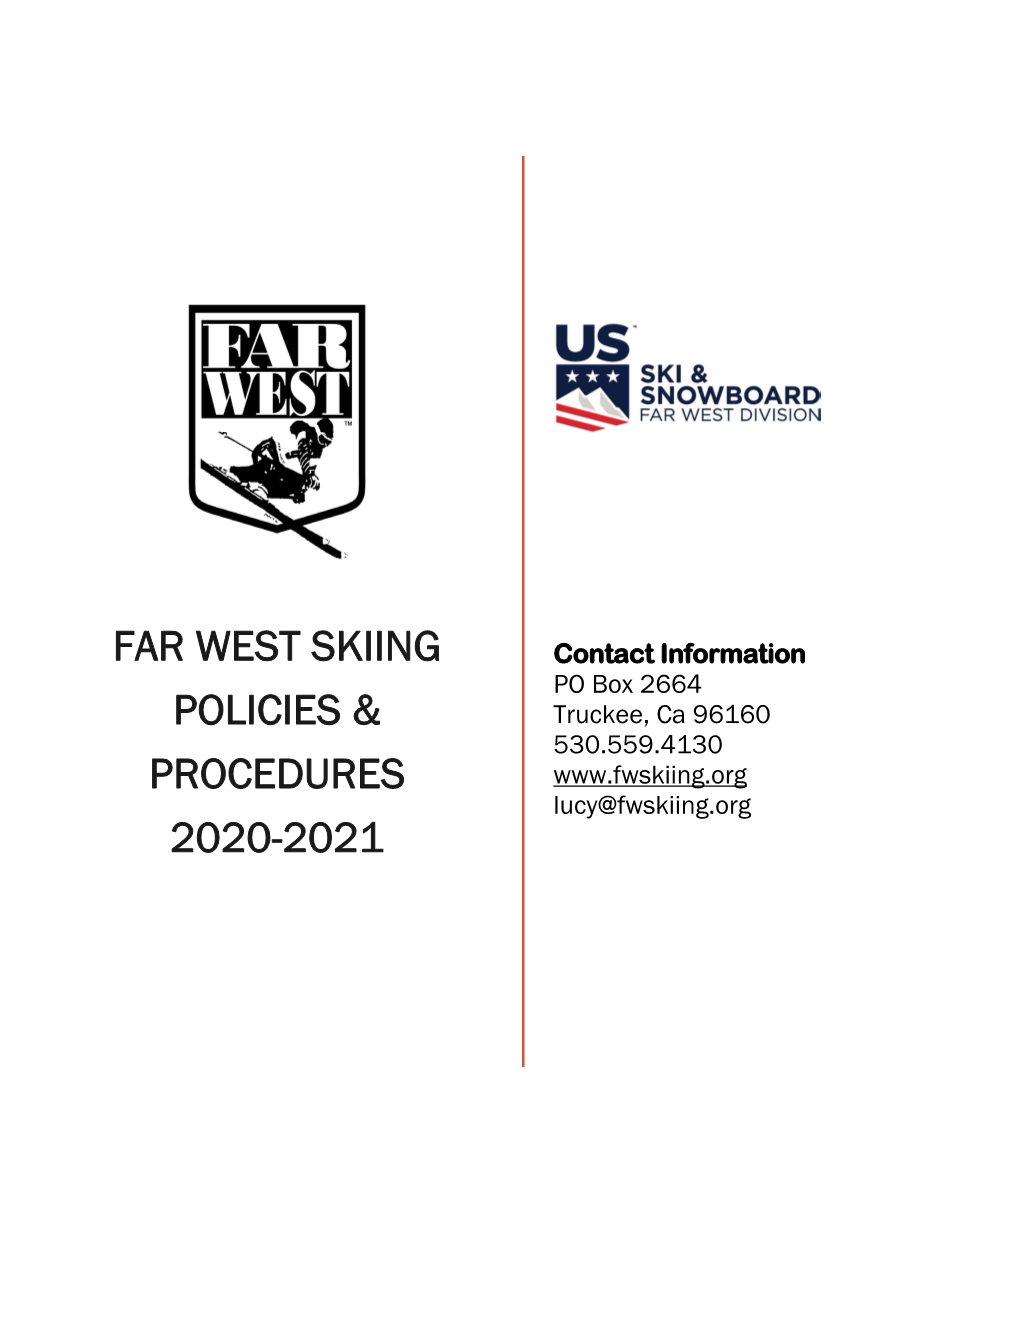 Far West Skiing Policies & Procedures 2020-2021